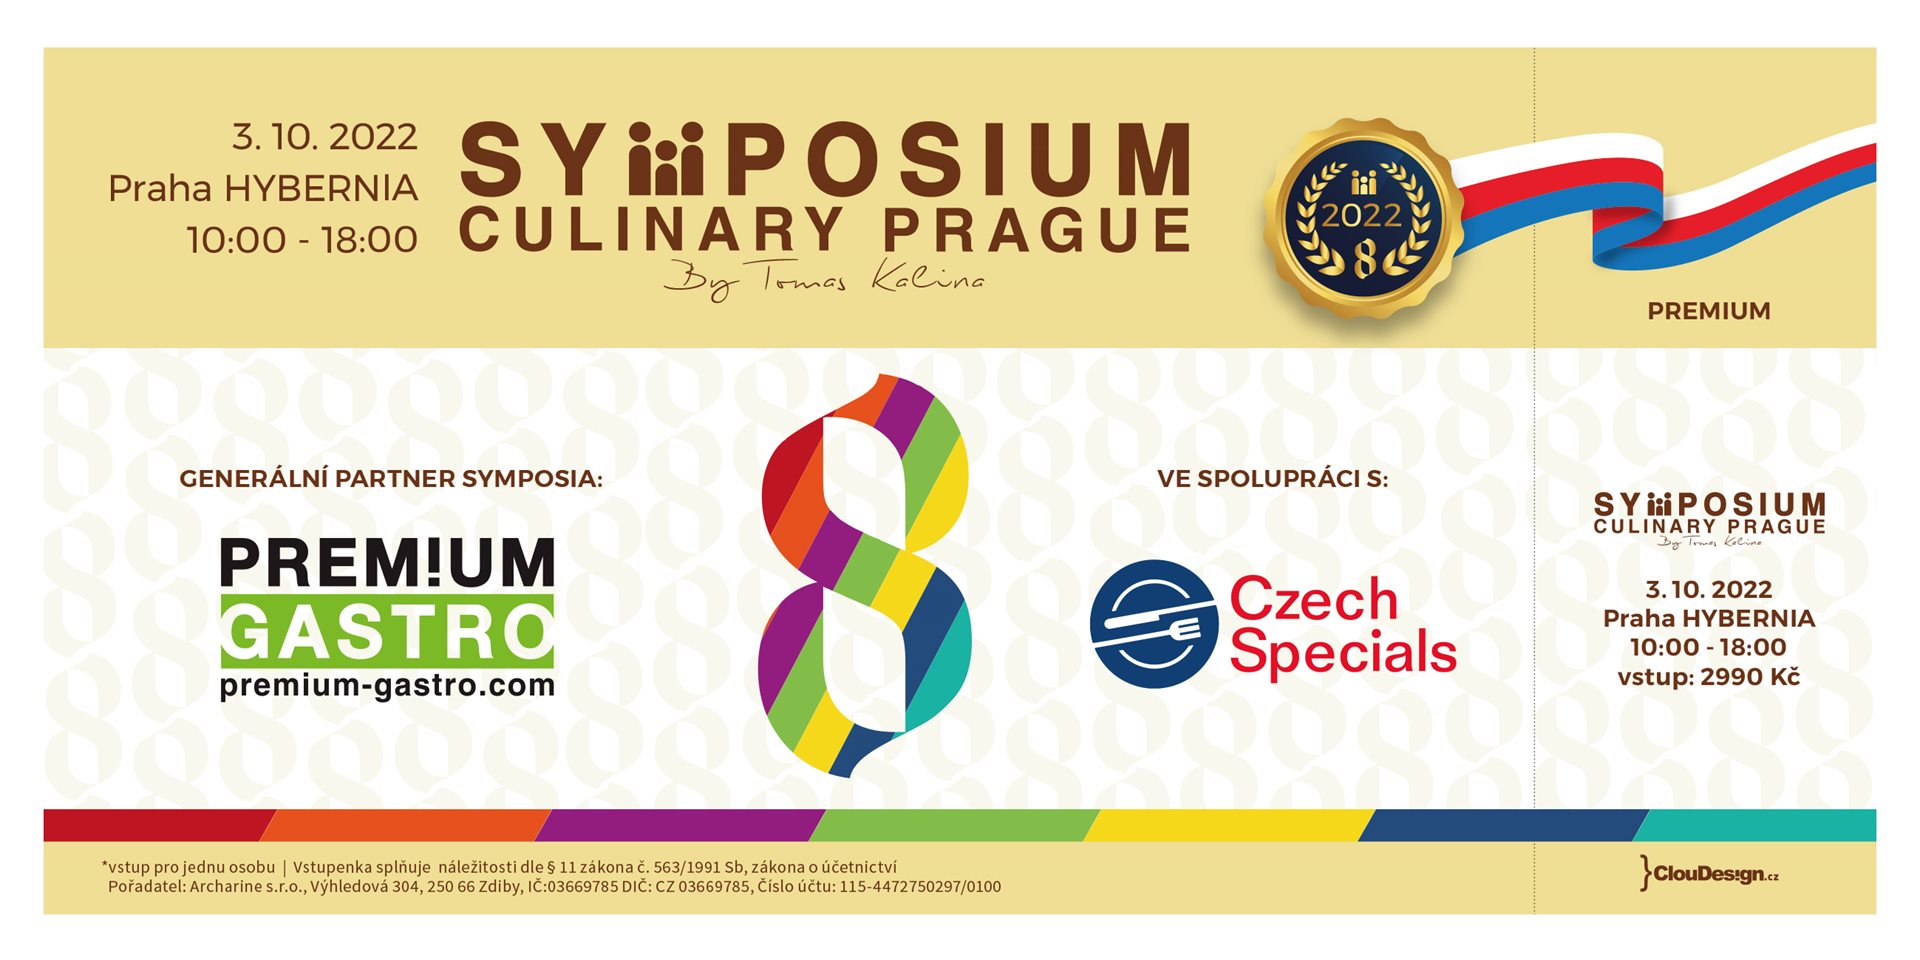 Symposium Culinary Prague